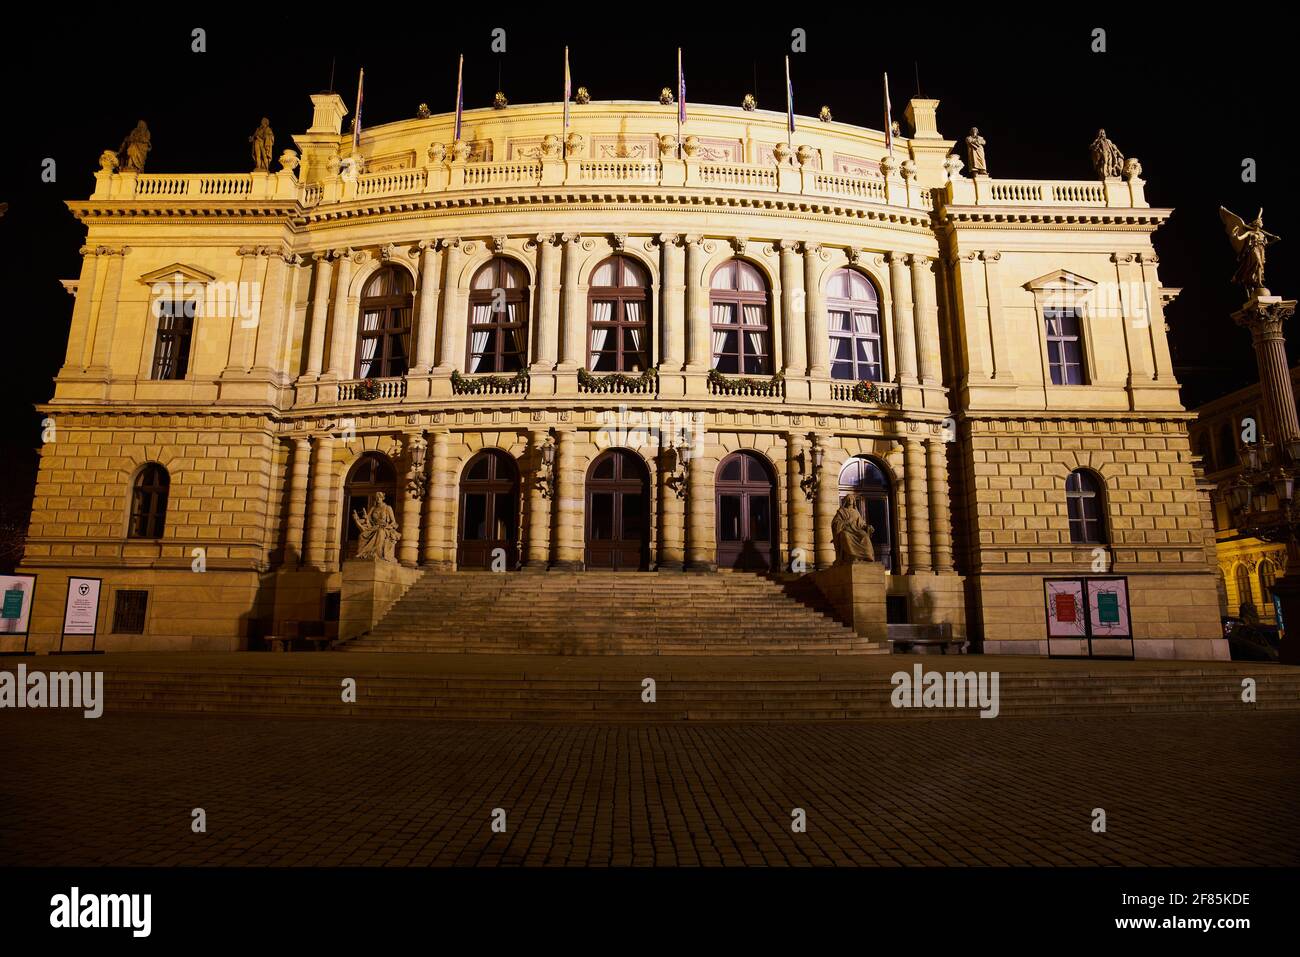 PRAGUE, RÉPUBLIQUE TCHÈQUE - 01 janv. 2021: Prague, République Tchèque - 1er janvier 2021: Vue de nuit de la salle de concert Rudolfinum à Prague Banque D'Images